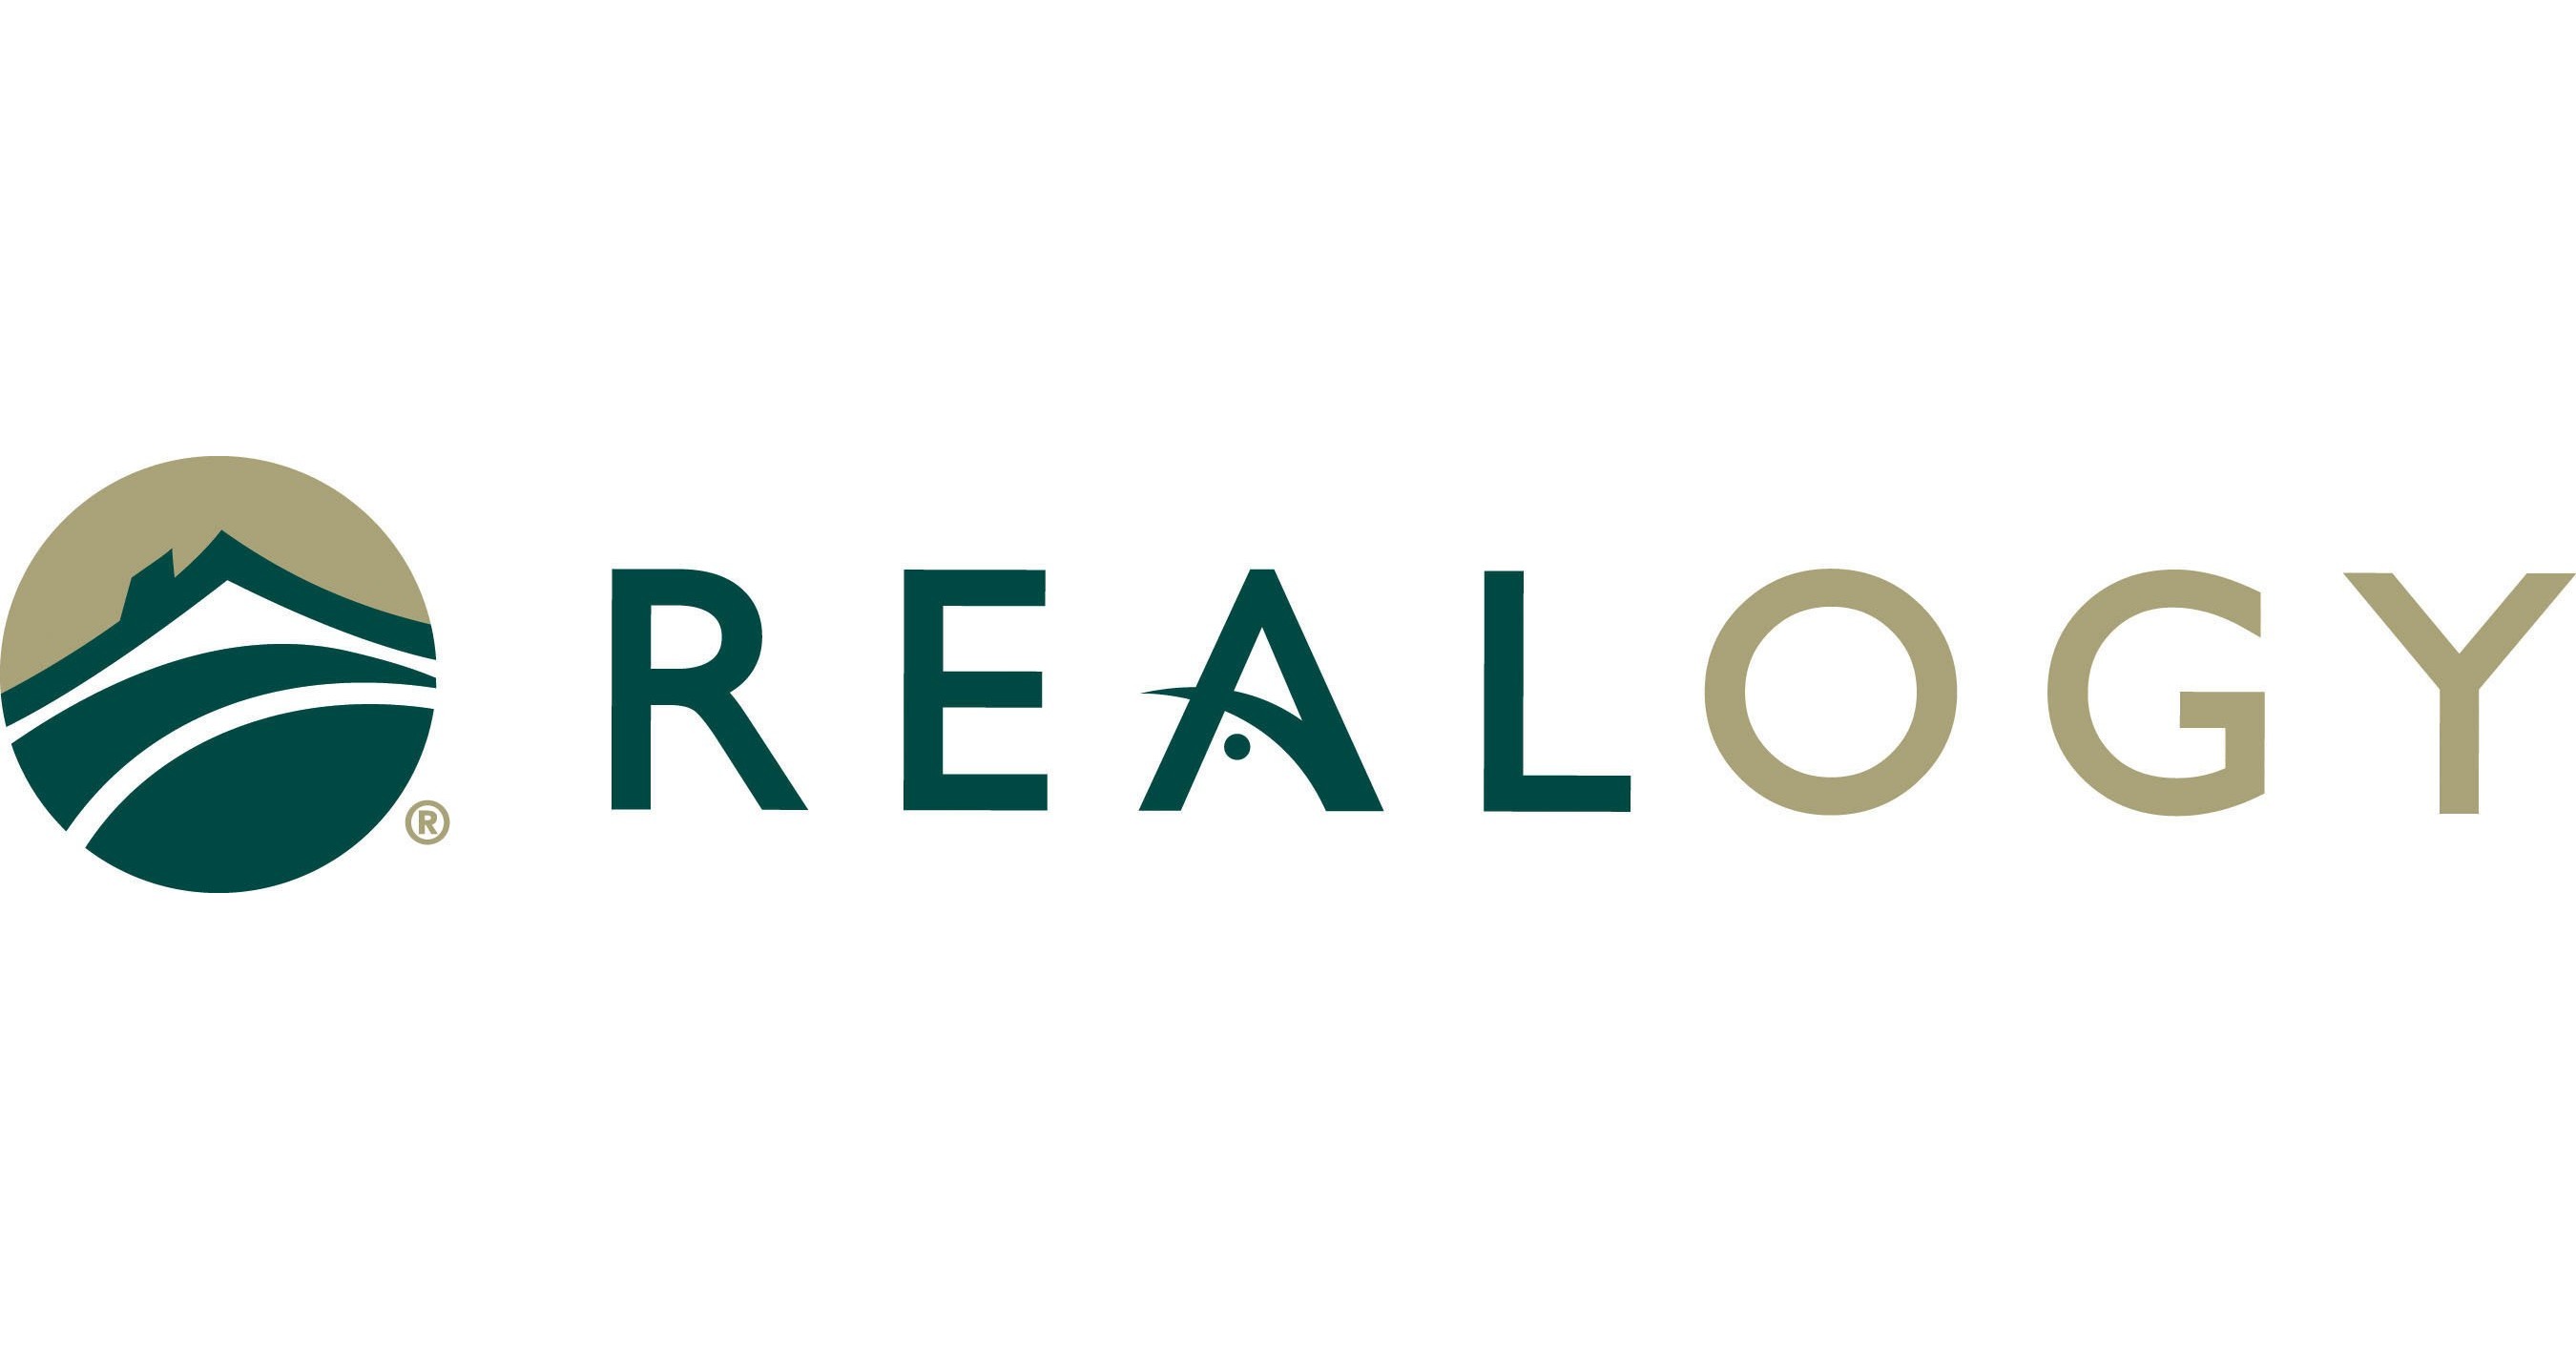  Realogy team up on new real estate platform